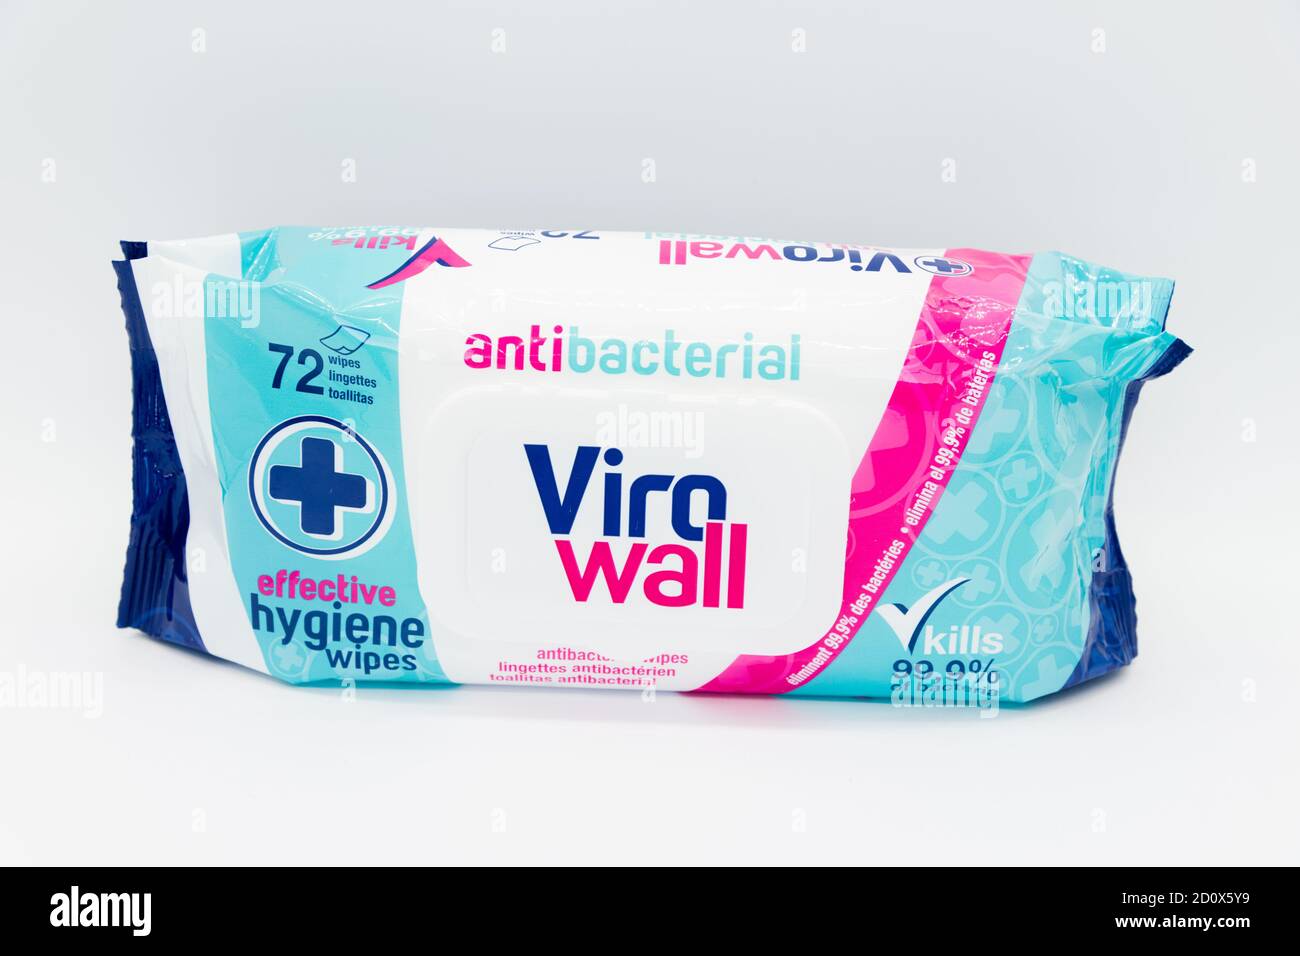 Irvine, Schottland, Großbritannien - 01. Oktober 2020: Ein Paket antibakterieller Viro Wall Wischtücher auf weißem Hintergrund. Stockfoto